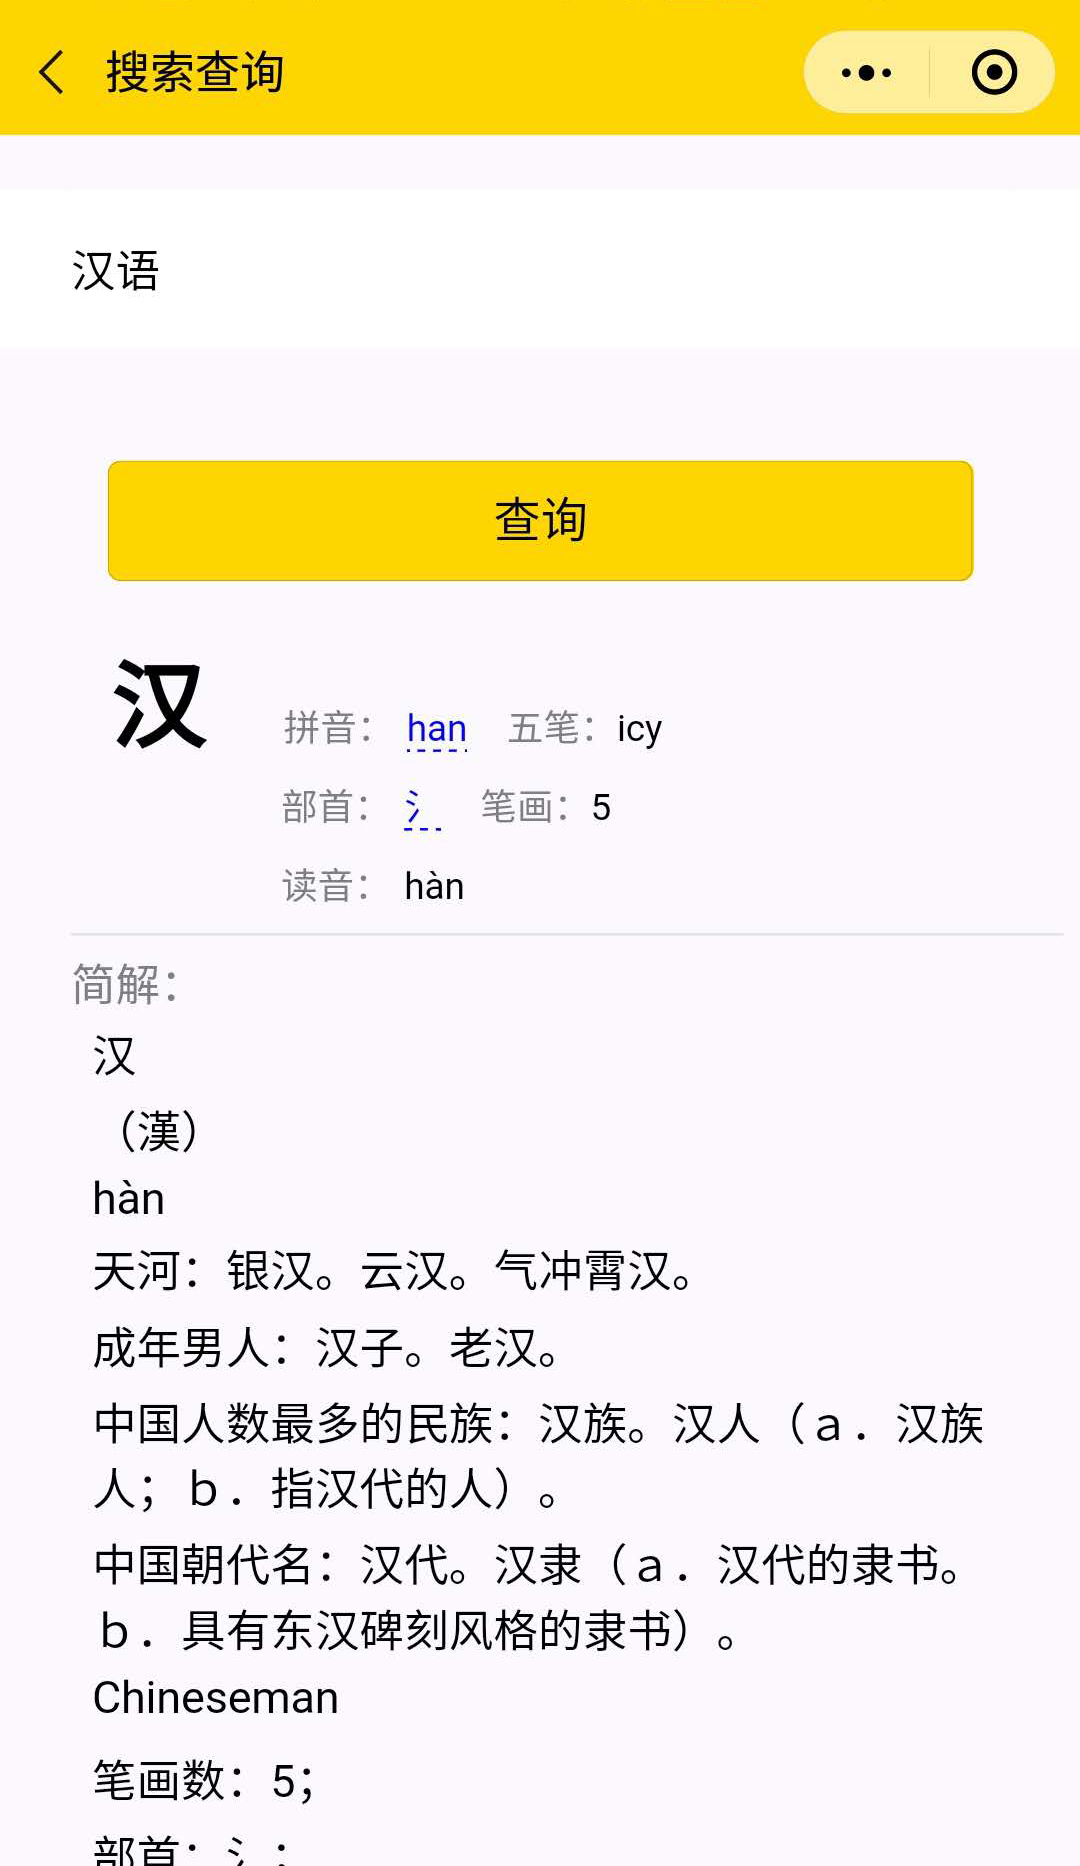 汉语字词典_汉语字词典小程序_汉语字词典微信小程序